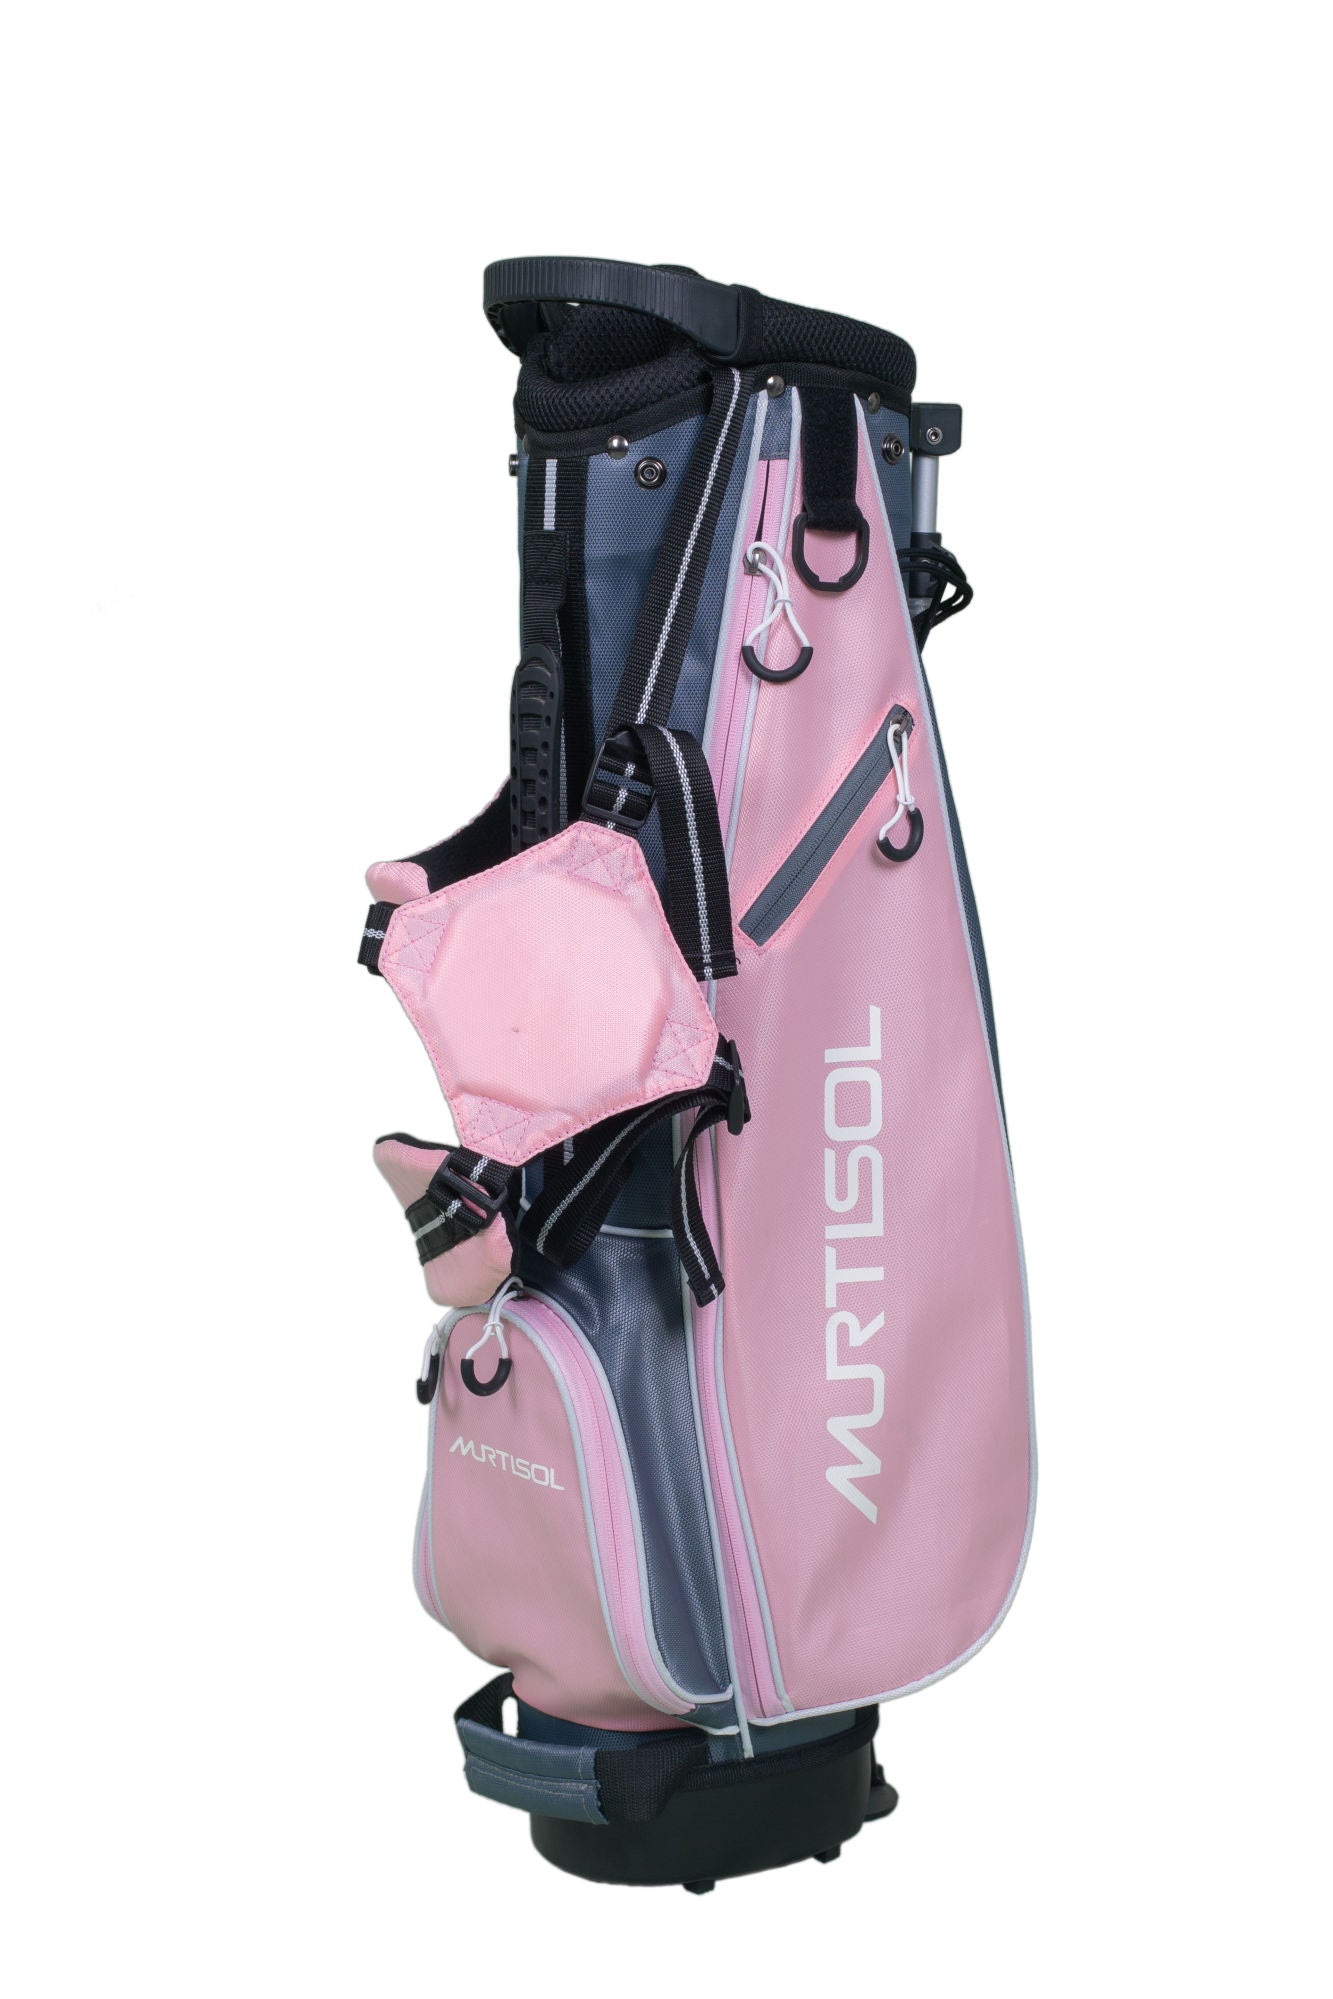 11-13 years old child's RH golf club 5-piece set pink - SportsGO